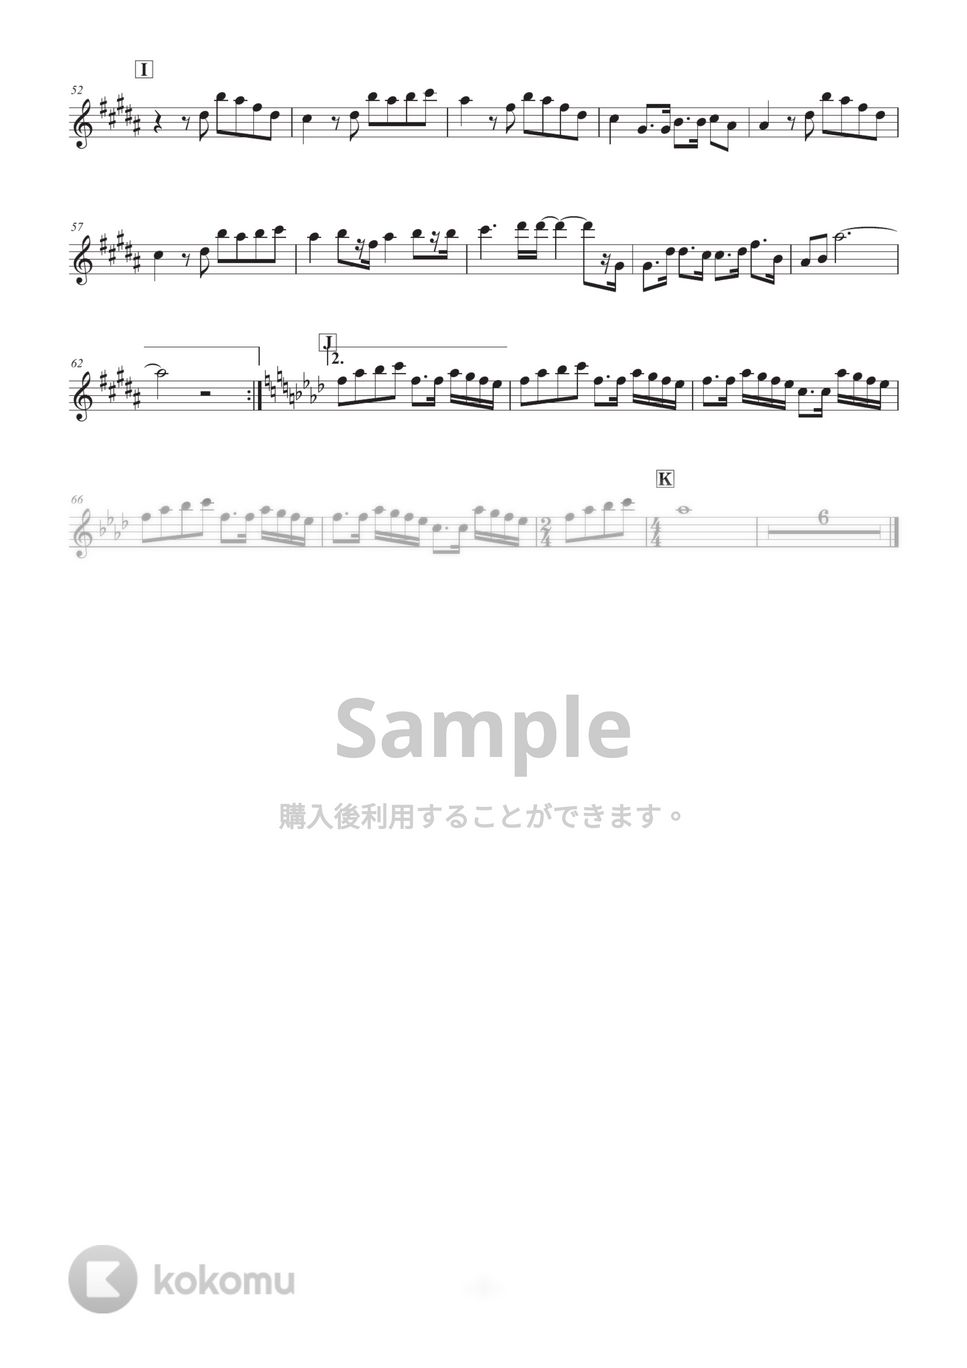 ヒグチアイ - 悪魔の子 (in E♭) by HiRO Sax